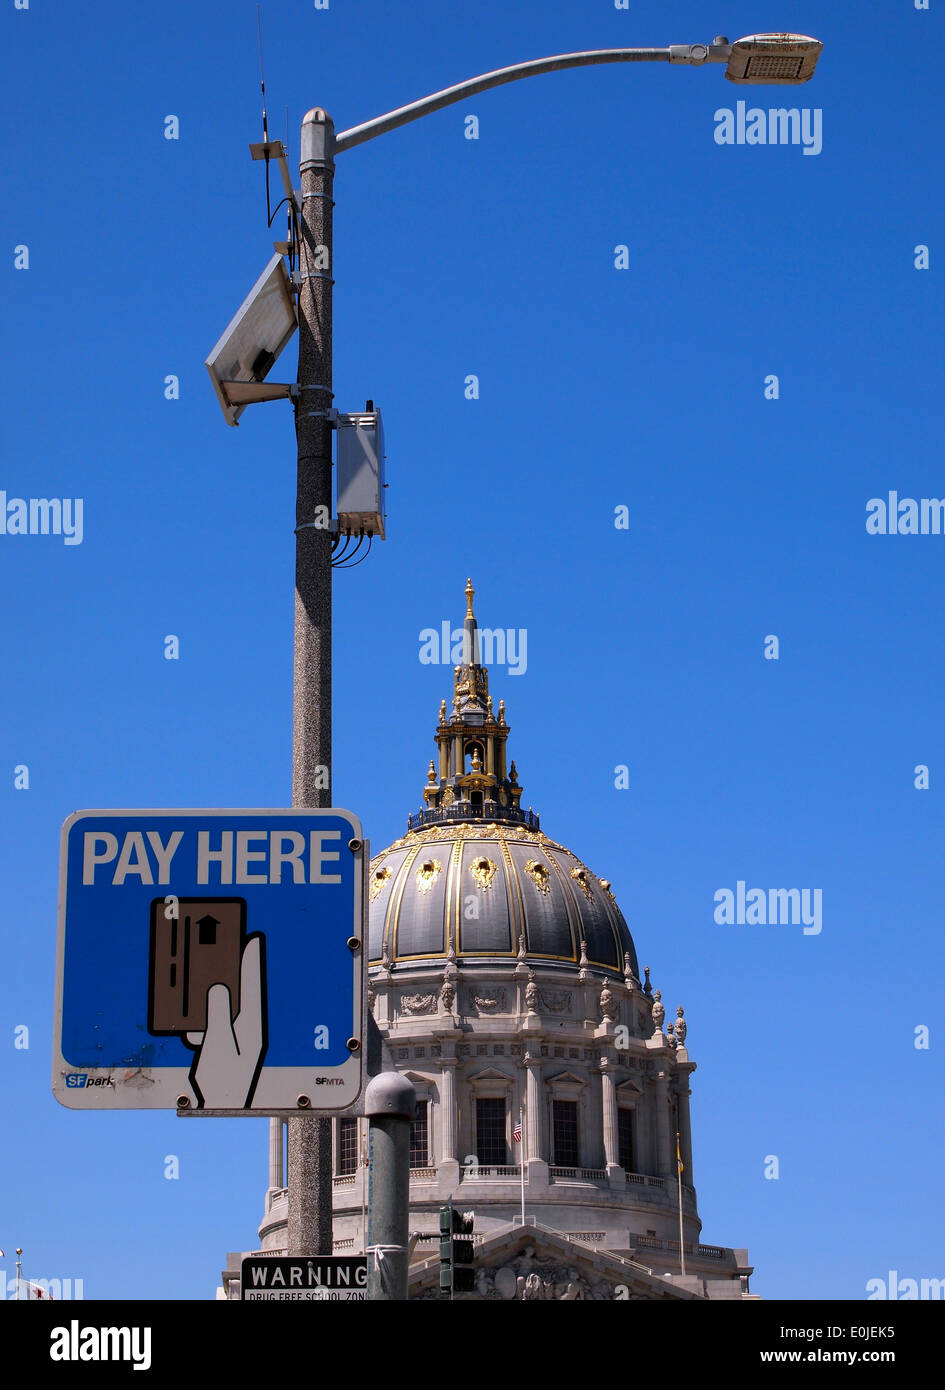 Pagar aquí INSCRIPCIÓN Ayuntamiento de San Francisco, California Foto de stock